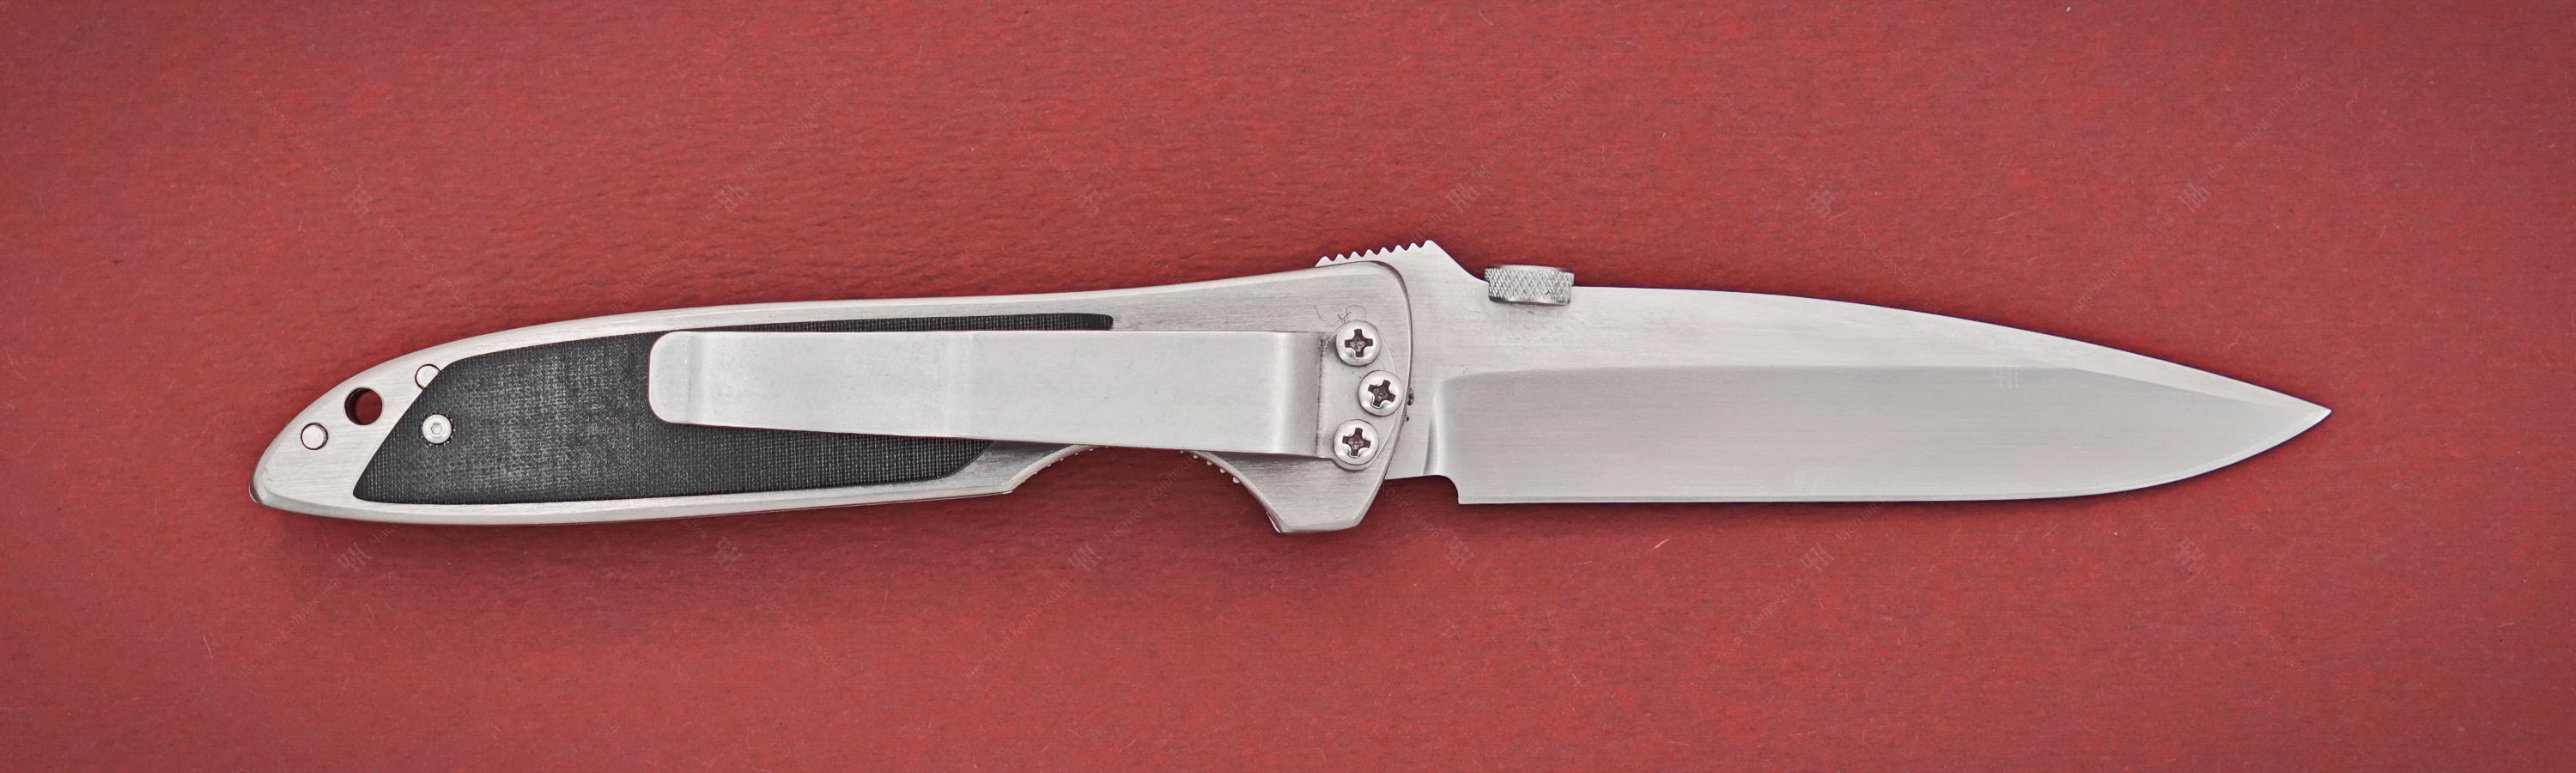 ATS-34 blade